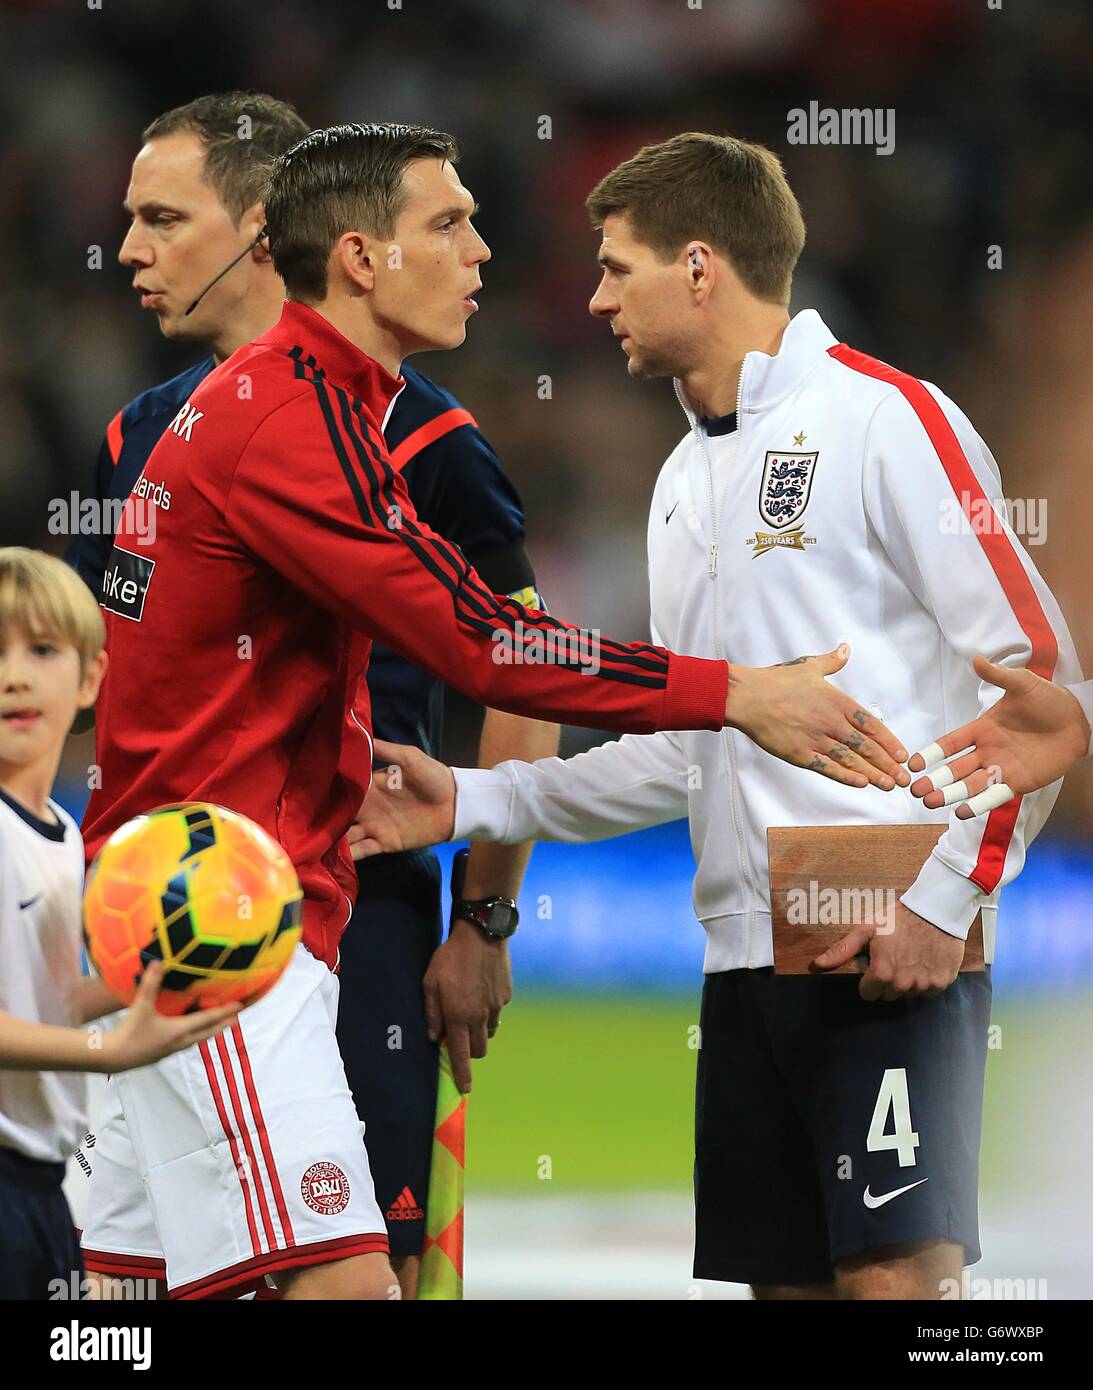 Calcio - Internazionale amichevole - Inghilterra / Danimarca - Stadio di Wembley. Il capitano inglese Steven Gerrard (a destra) e il capitano danese Daniel Agger (a sinistra) scuotono le mani prima della partita Foto Stock